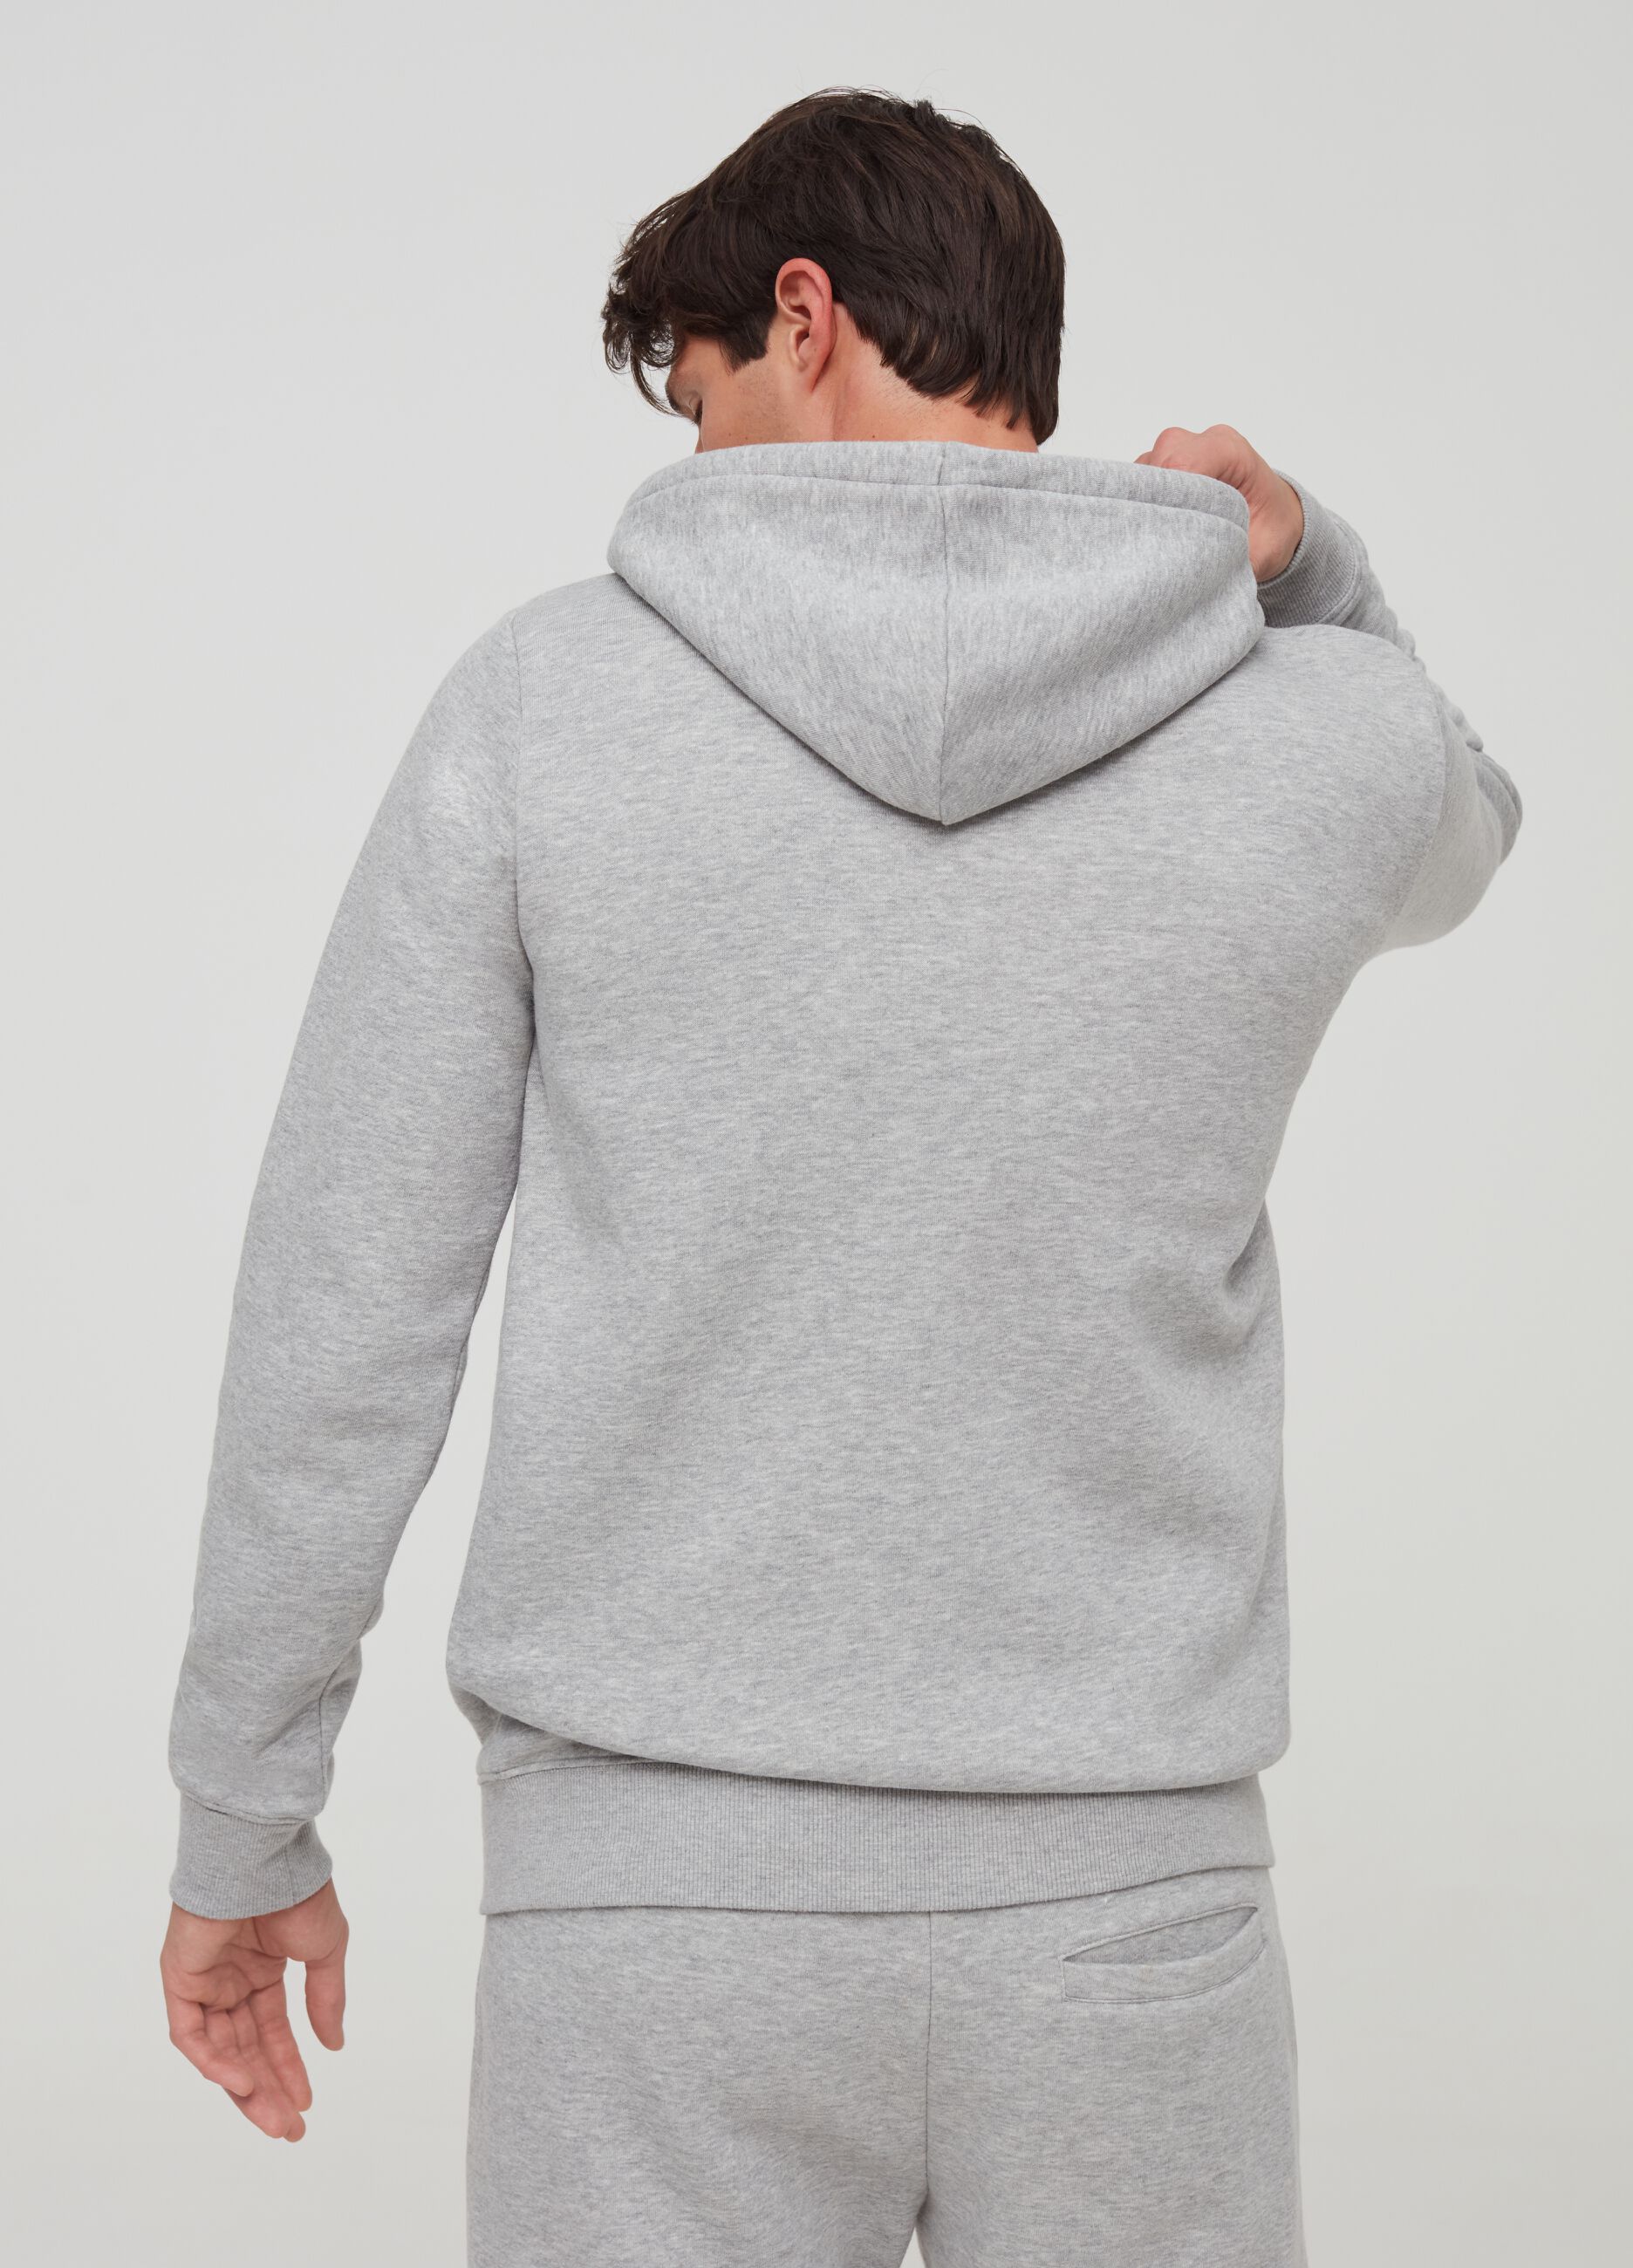 Lotto sweatshirt with hood and zip